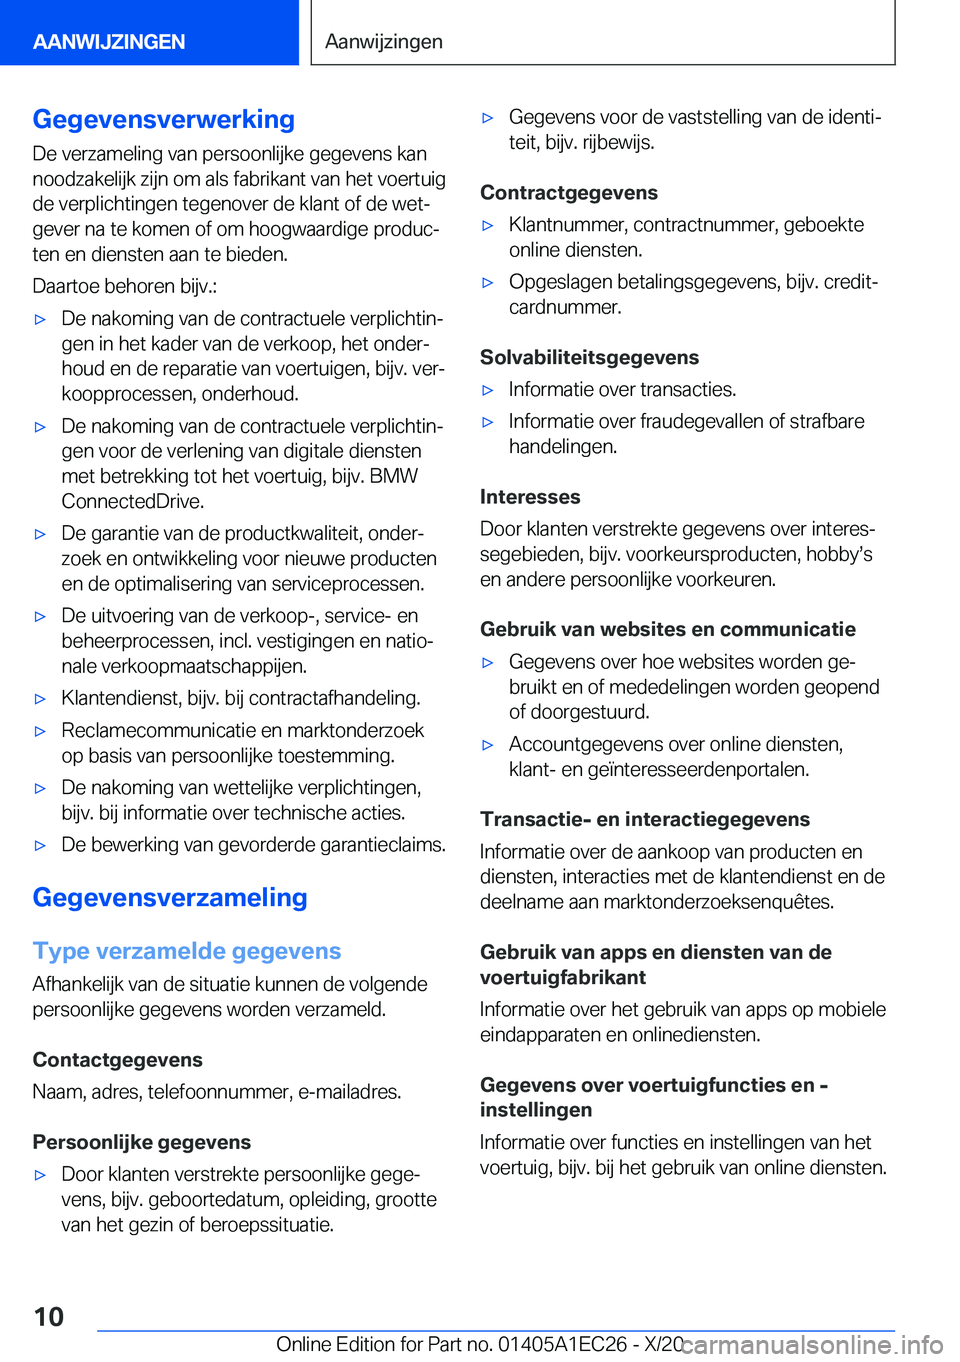 BMW 8 SERIES GRAN COUPE 2021  Instructieboekjes (in Dutch) �G�e�g�e�v�e�n�s�v�e�r�w�e�r�k�i�n�g
�D�e��v�e�r�z�a�m�e�l�i�n�g��v�a�n��p�e�r�s�o�o�n�l�i�j�k�e��g�e�g�e�v�e�n�s��k�a�n
�n�o�o�d�z�a�k�e�l�i�j�k��z�i�j�n��o�m��a�l�s��f�a�b�r�i�k�a�n�t��v�a